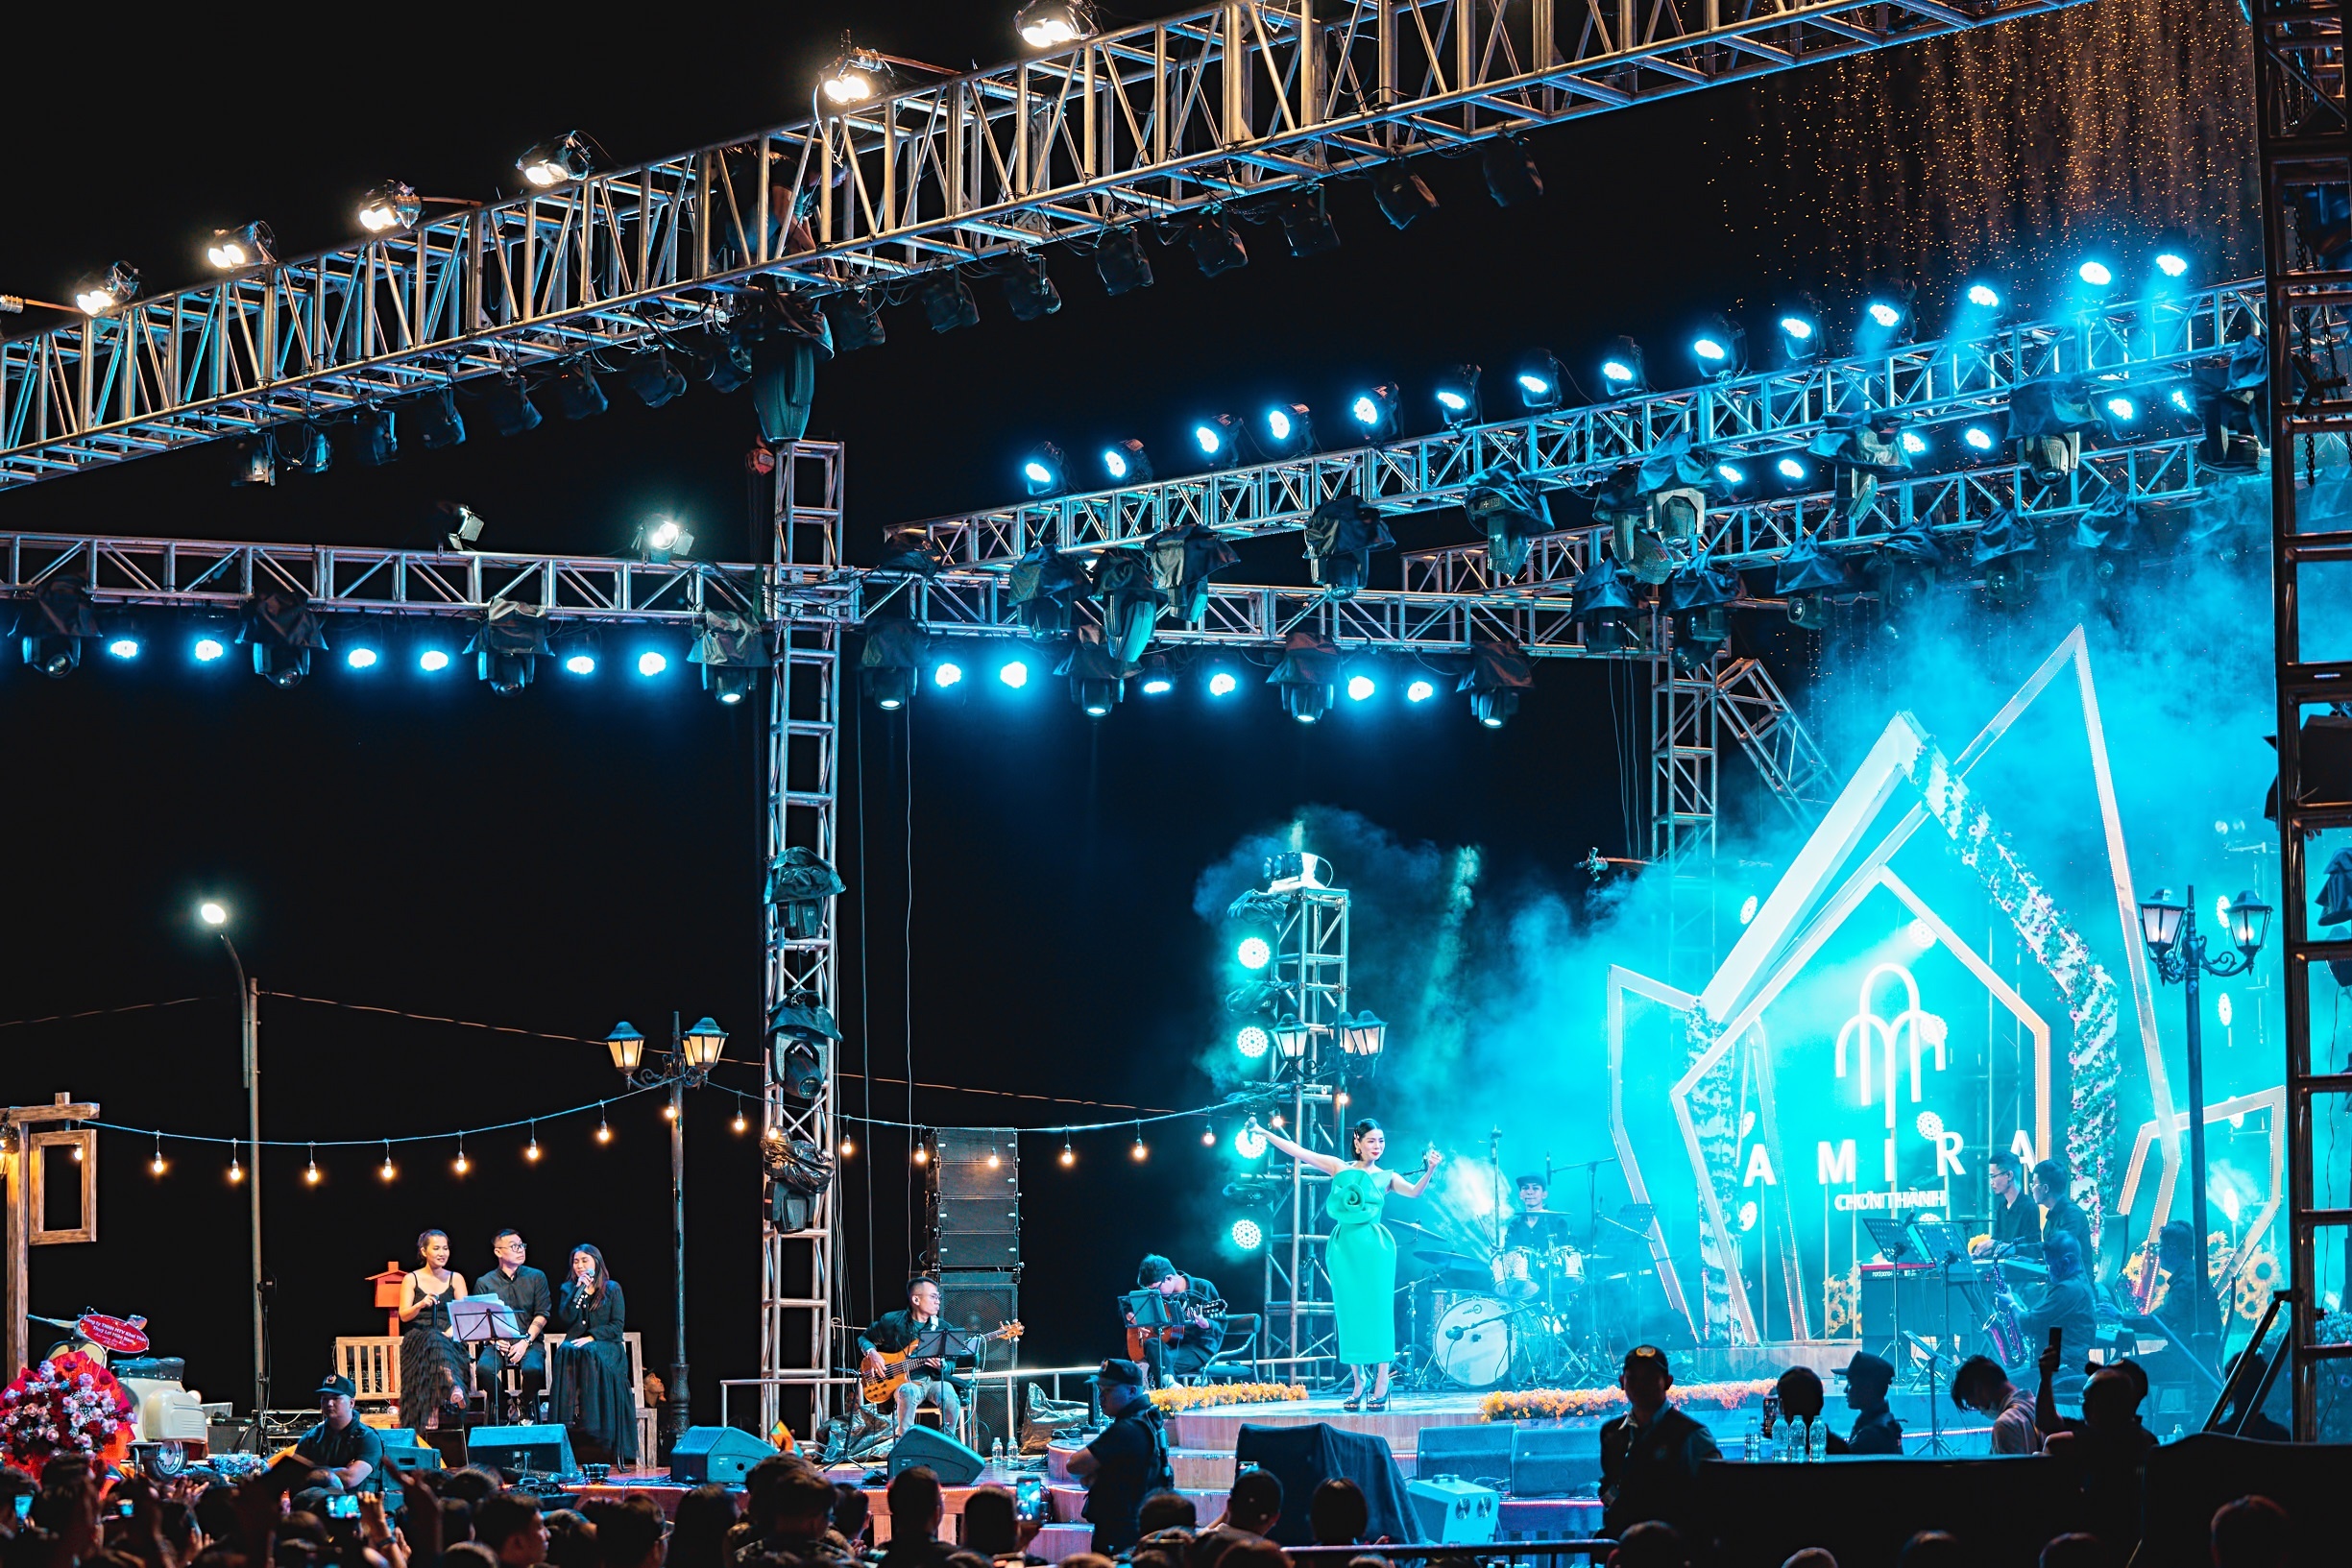 Sân khấu âm nhạc Amira Chơn Thành - dấu ấn thành phố nghỉ dưỡng bên hồ - ảnh 3